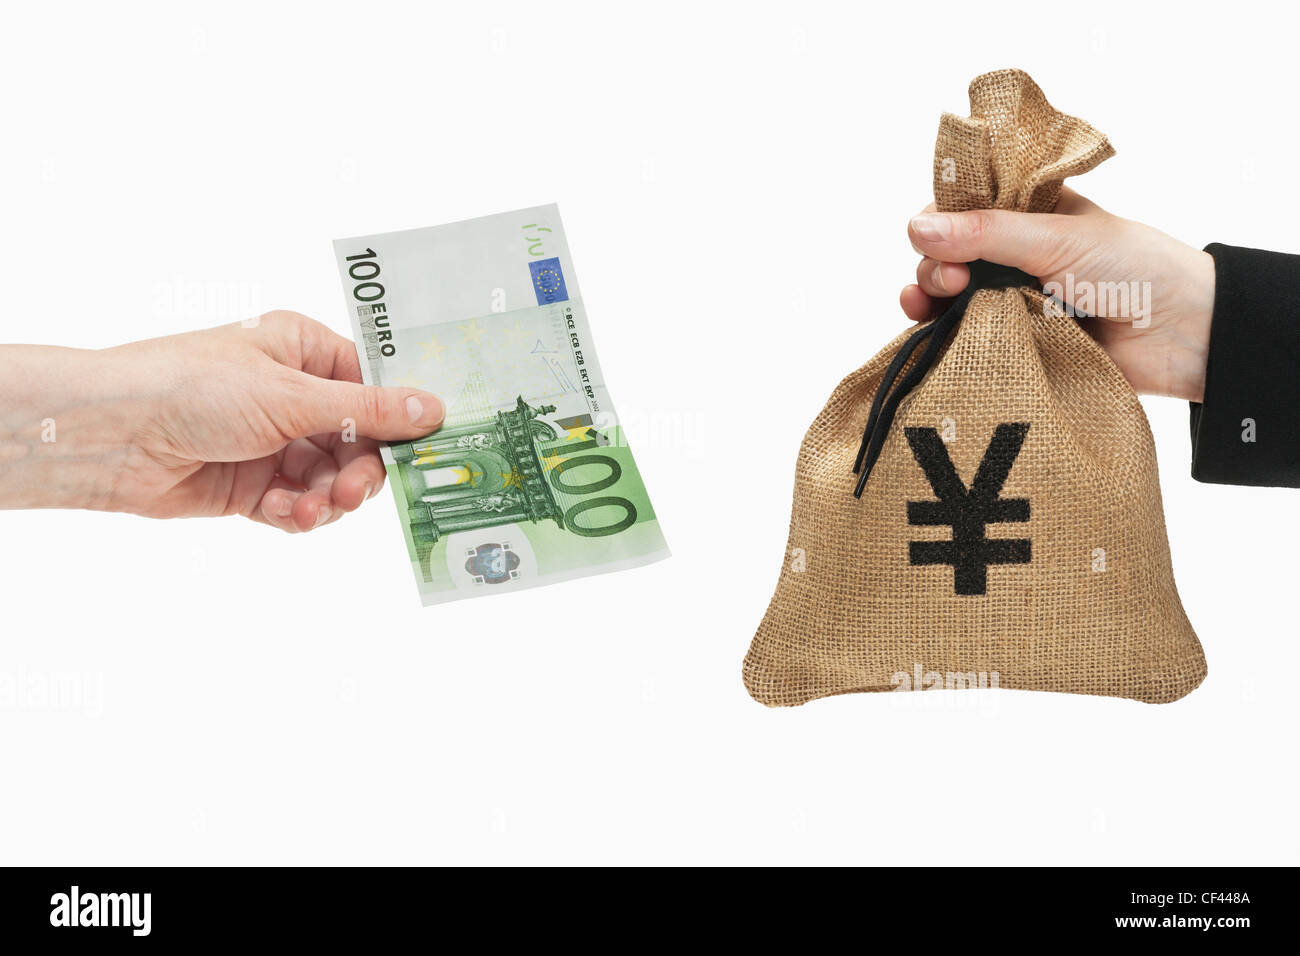 Un Euro 100 bill è tenuto in mano. Dall'altro lato un sacco di denaro con un Yen giapponese simbolo della valuta è tenuto in mano. Foto Stock